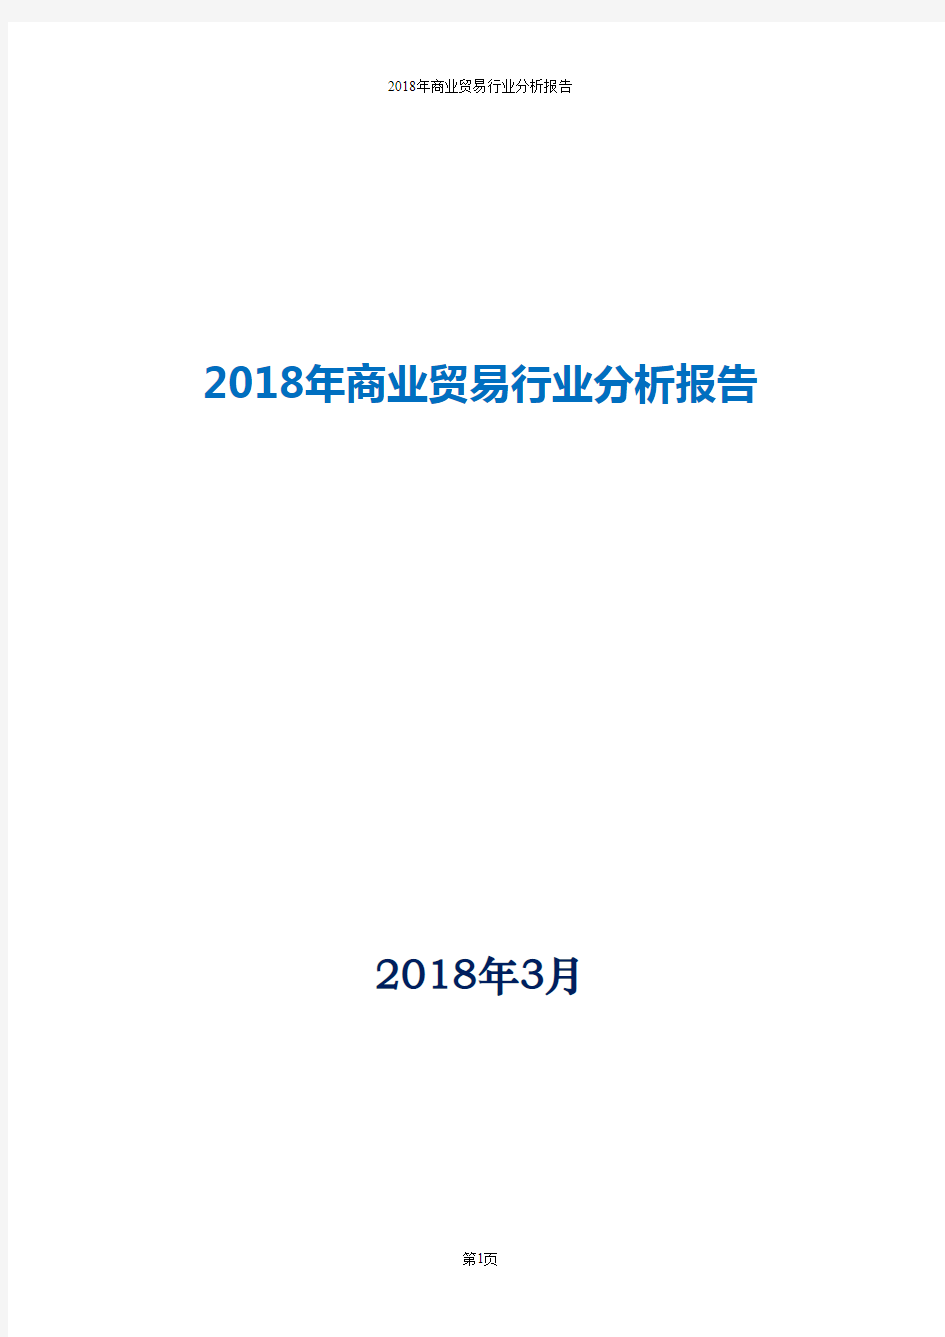 2018年商业贸易行业分析报告